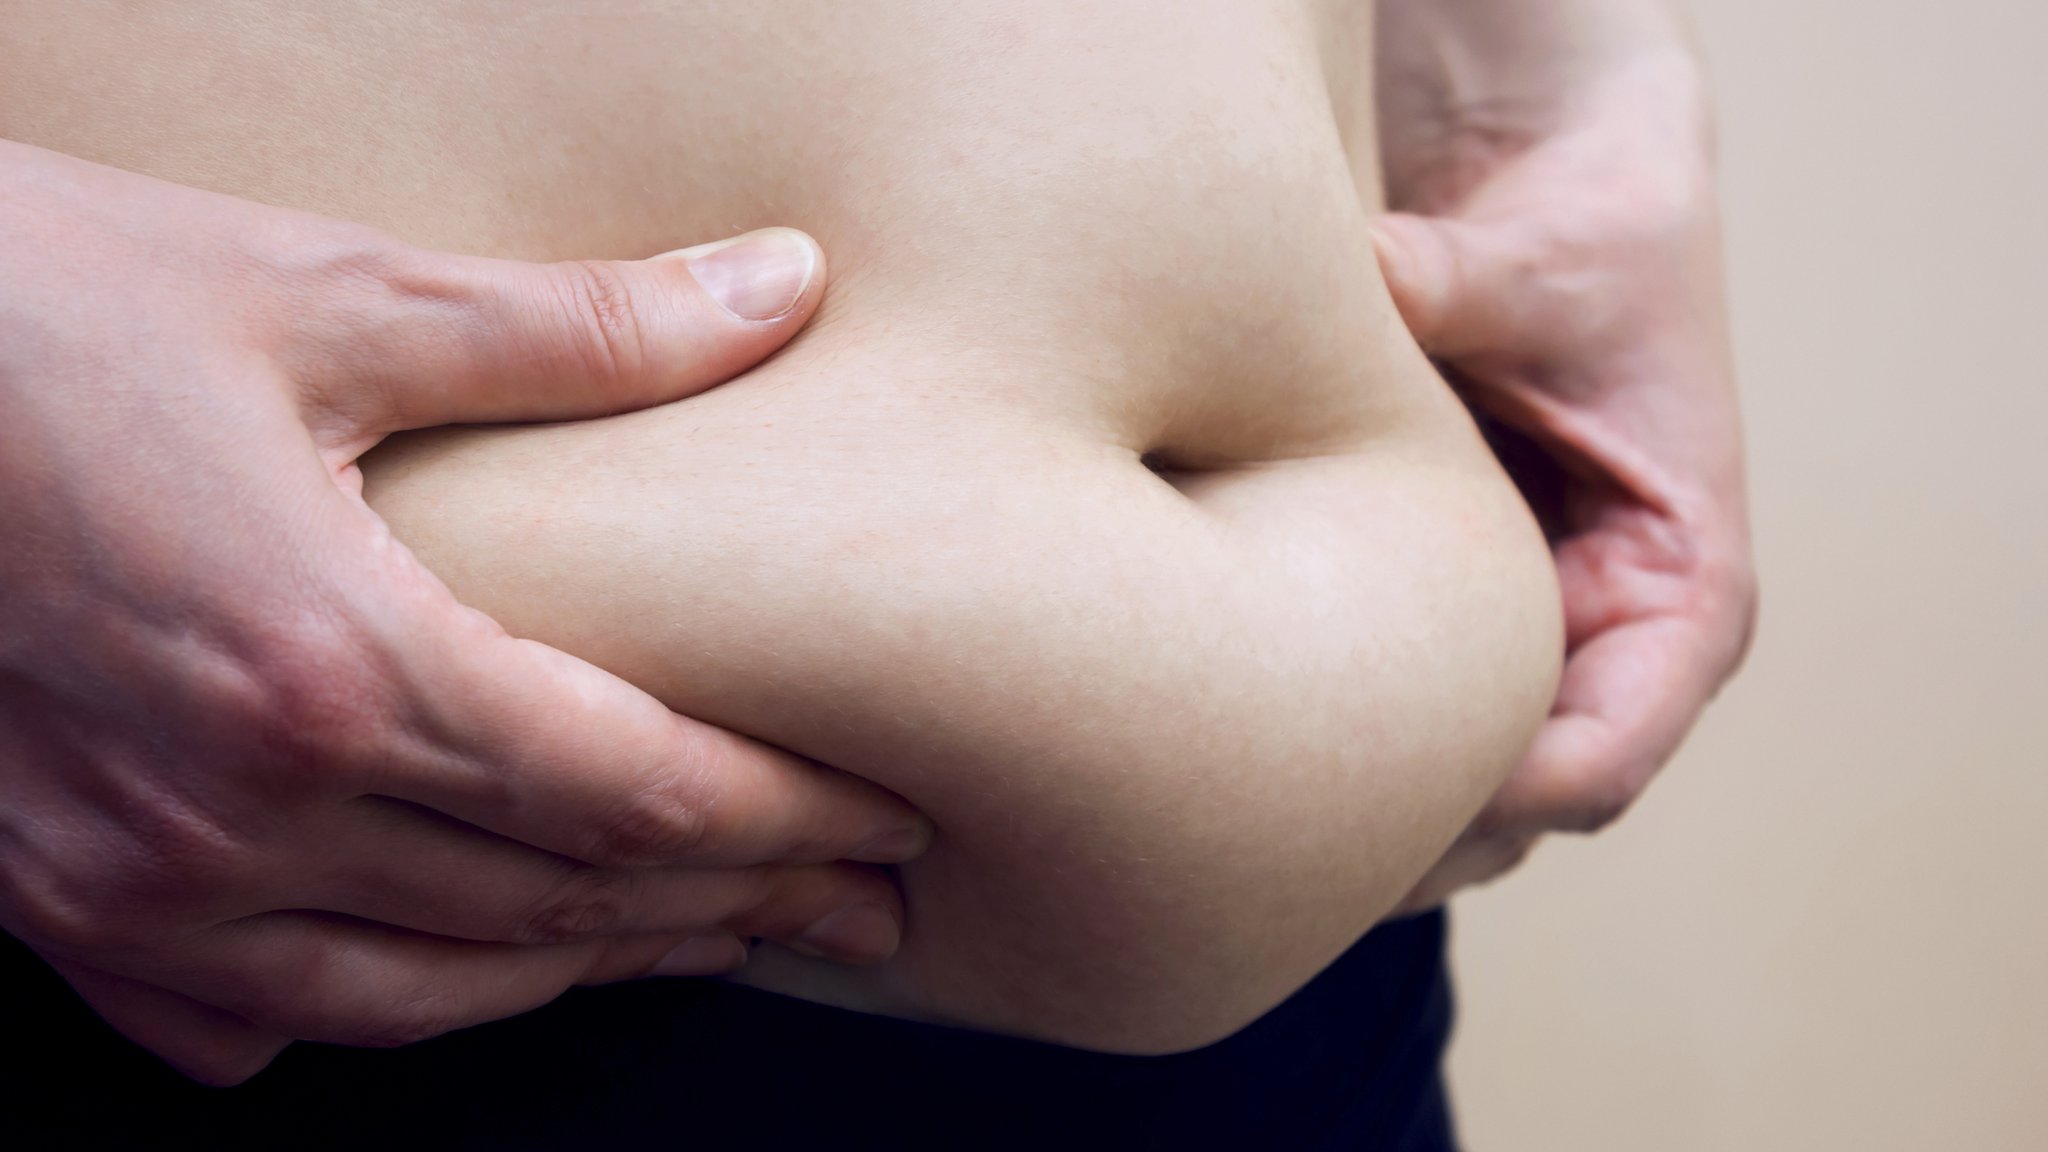 Qué son los abdominales hipopresivos y cómo te ayudan a reducir la cintura  - BBC News Mundo